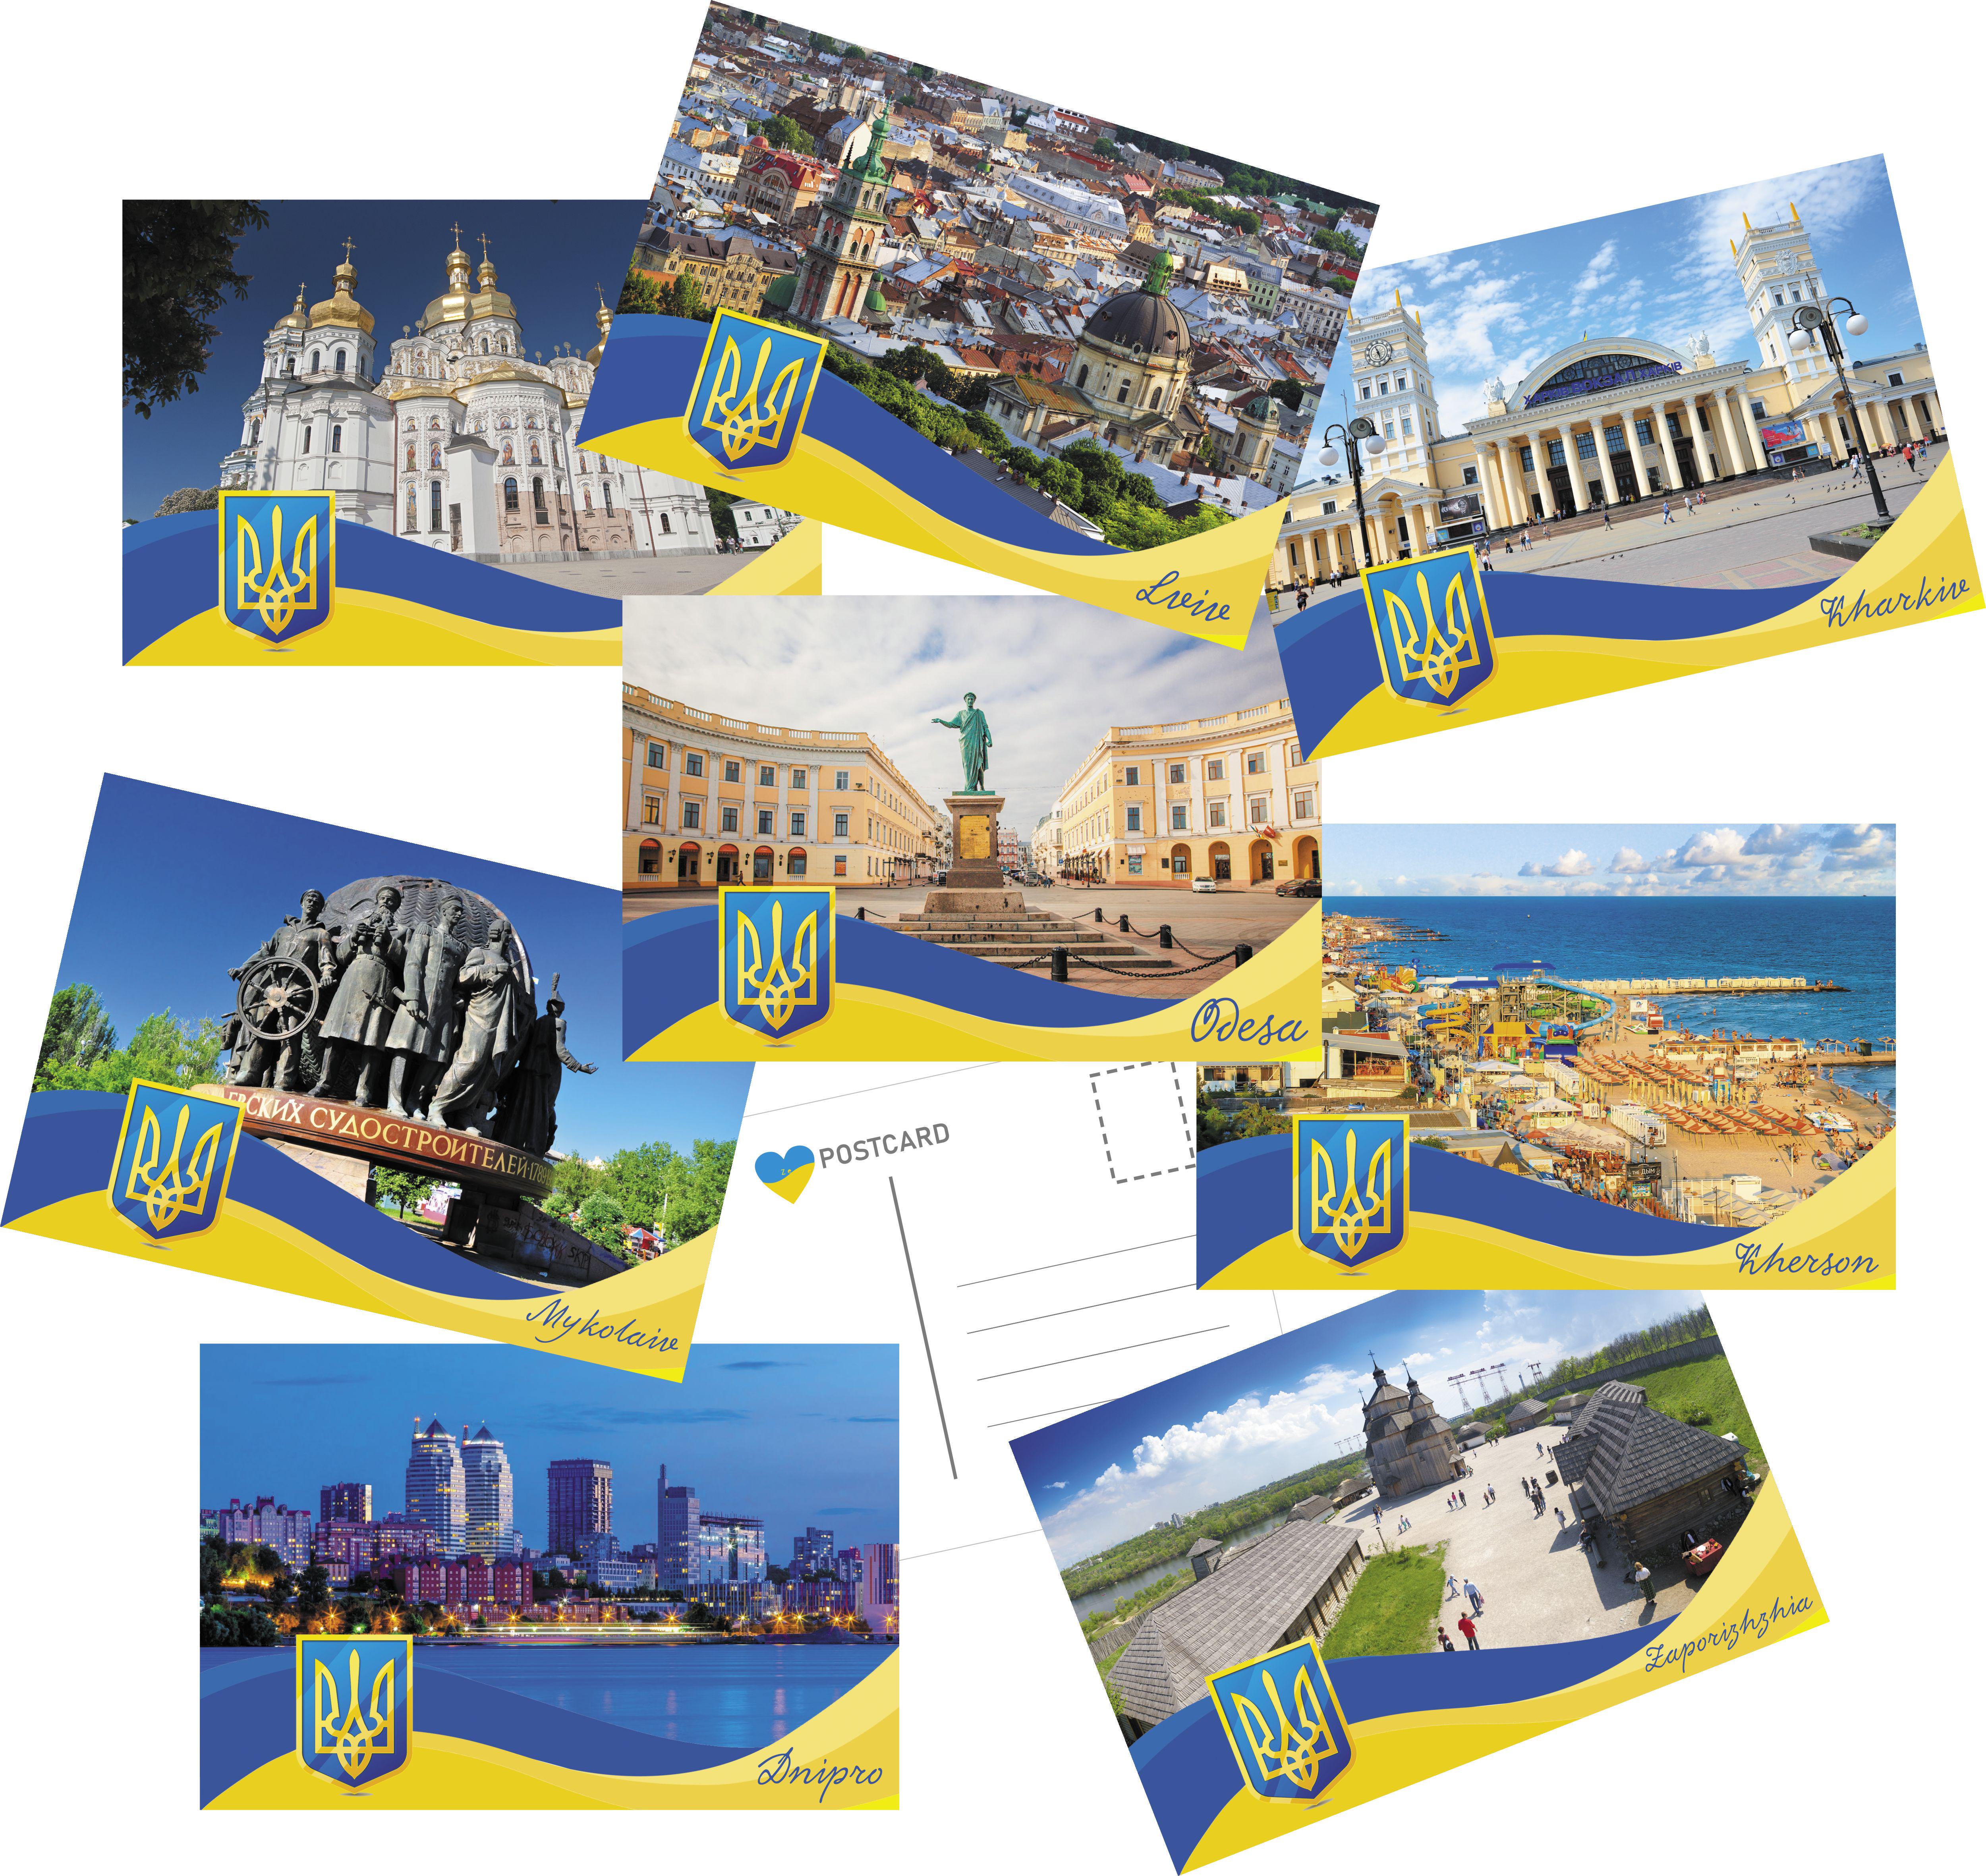 Старые открытки, филокартия — купить открытки Киева на аукционе для коллекционеров баштрен.рф